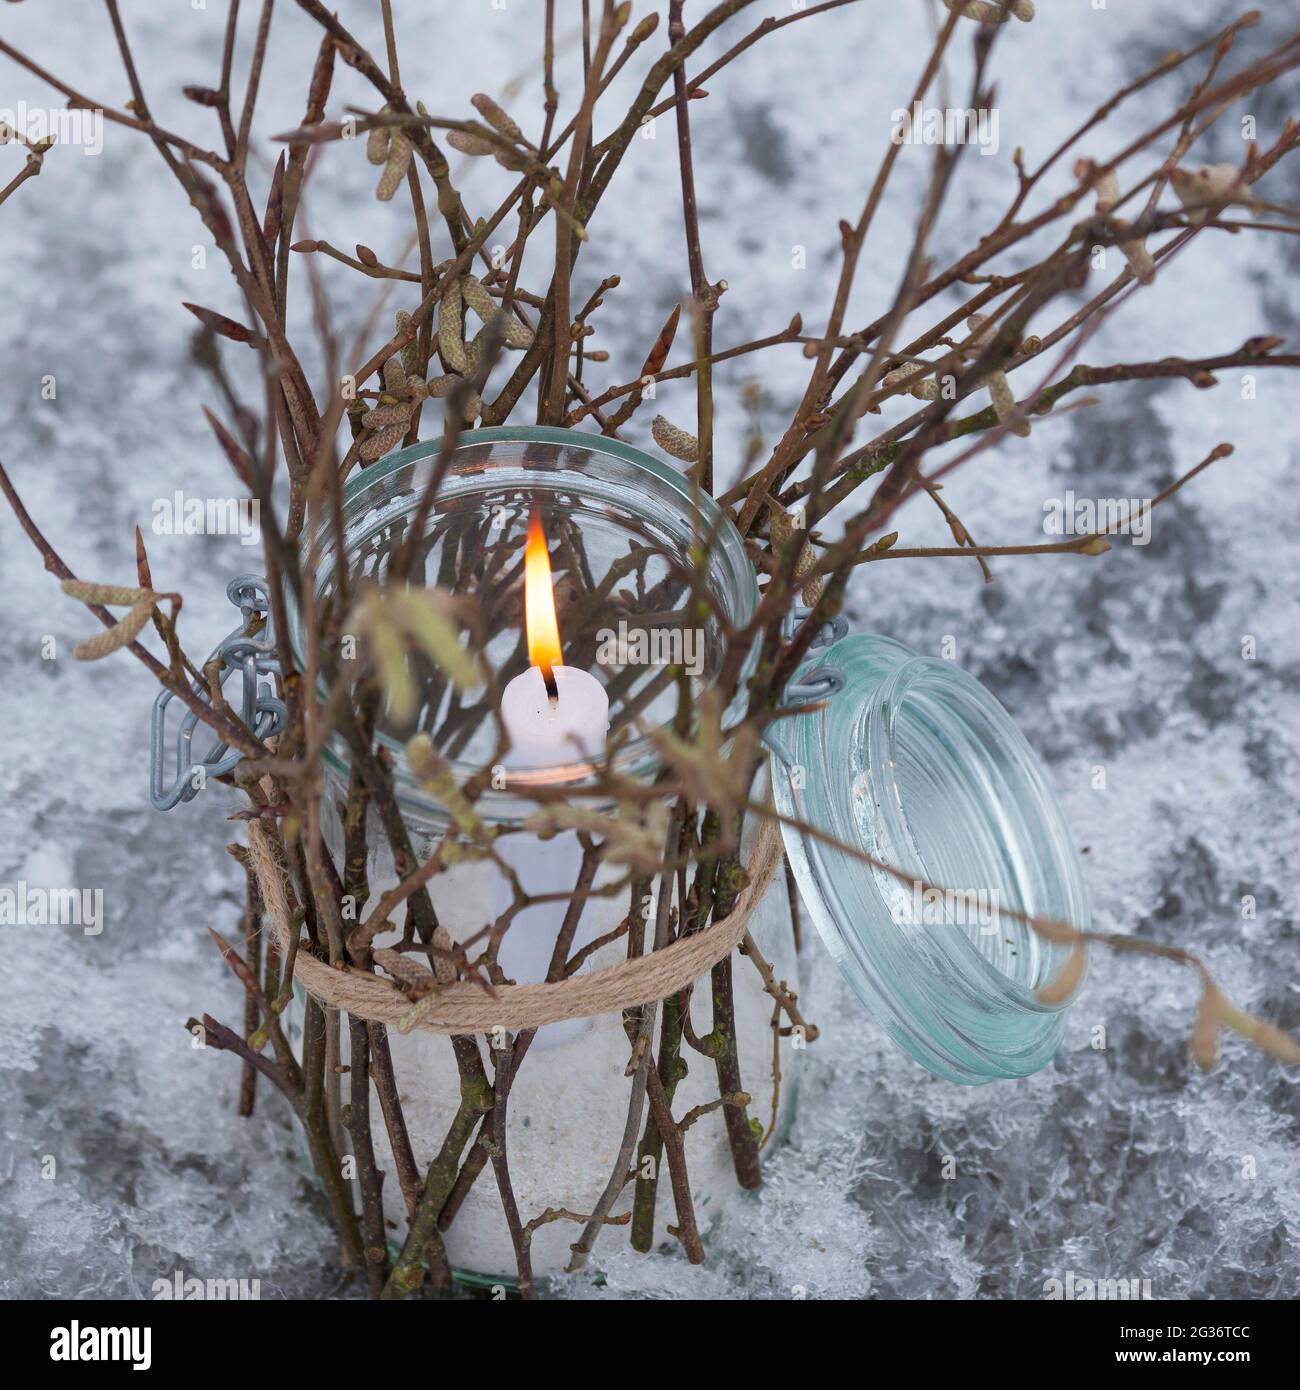 linterna, un cristal está decorado desde el exterior con palos, ramitas, ramitas. Una vela se levanta y quema en el vaso, protegido del viento, Foto de stock